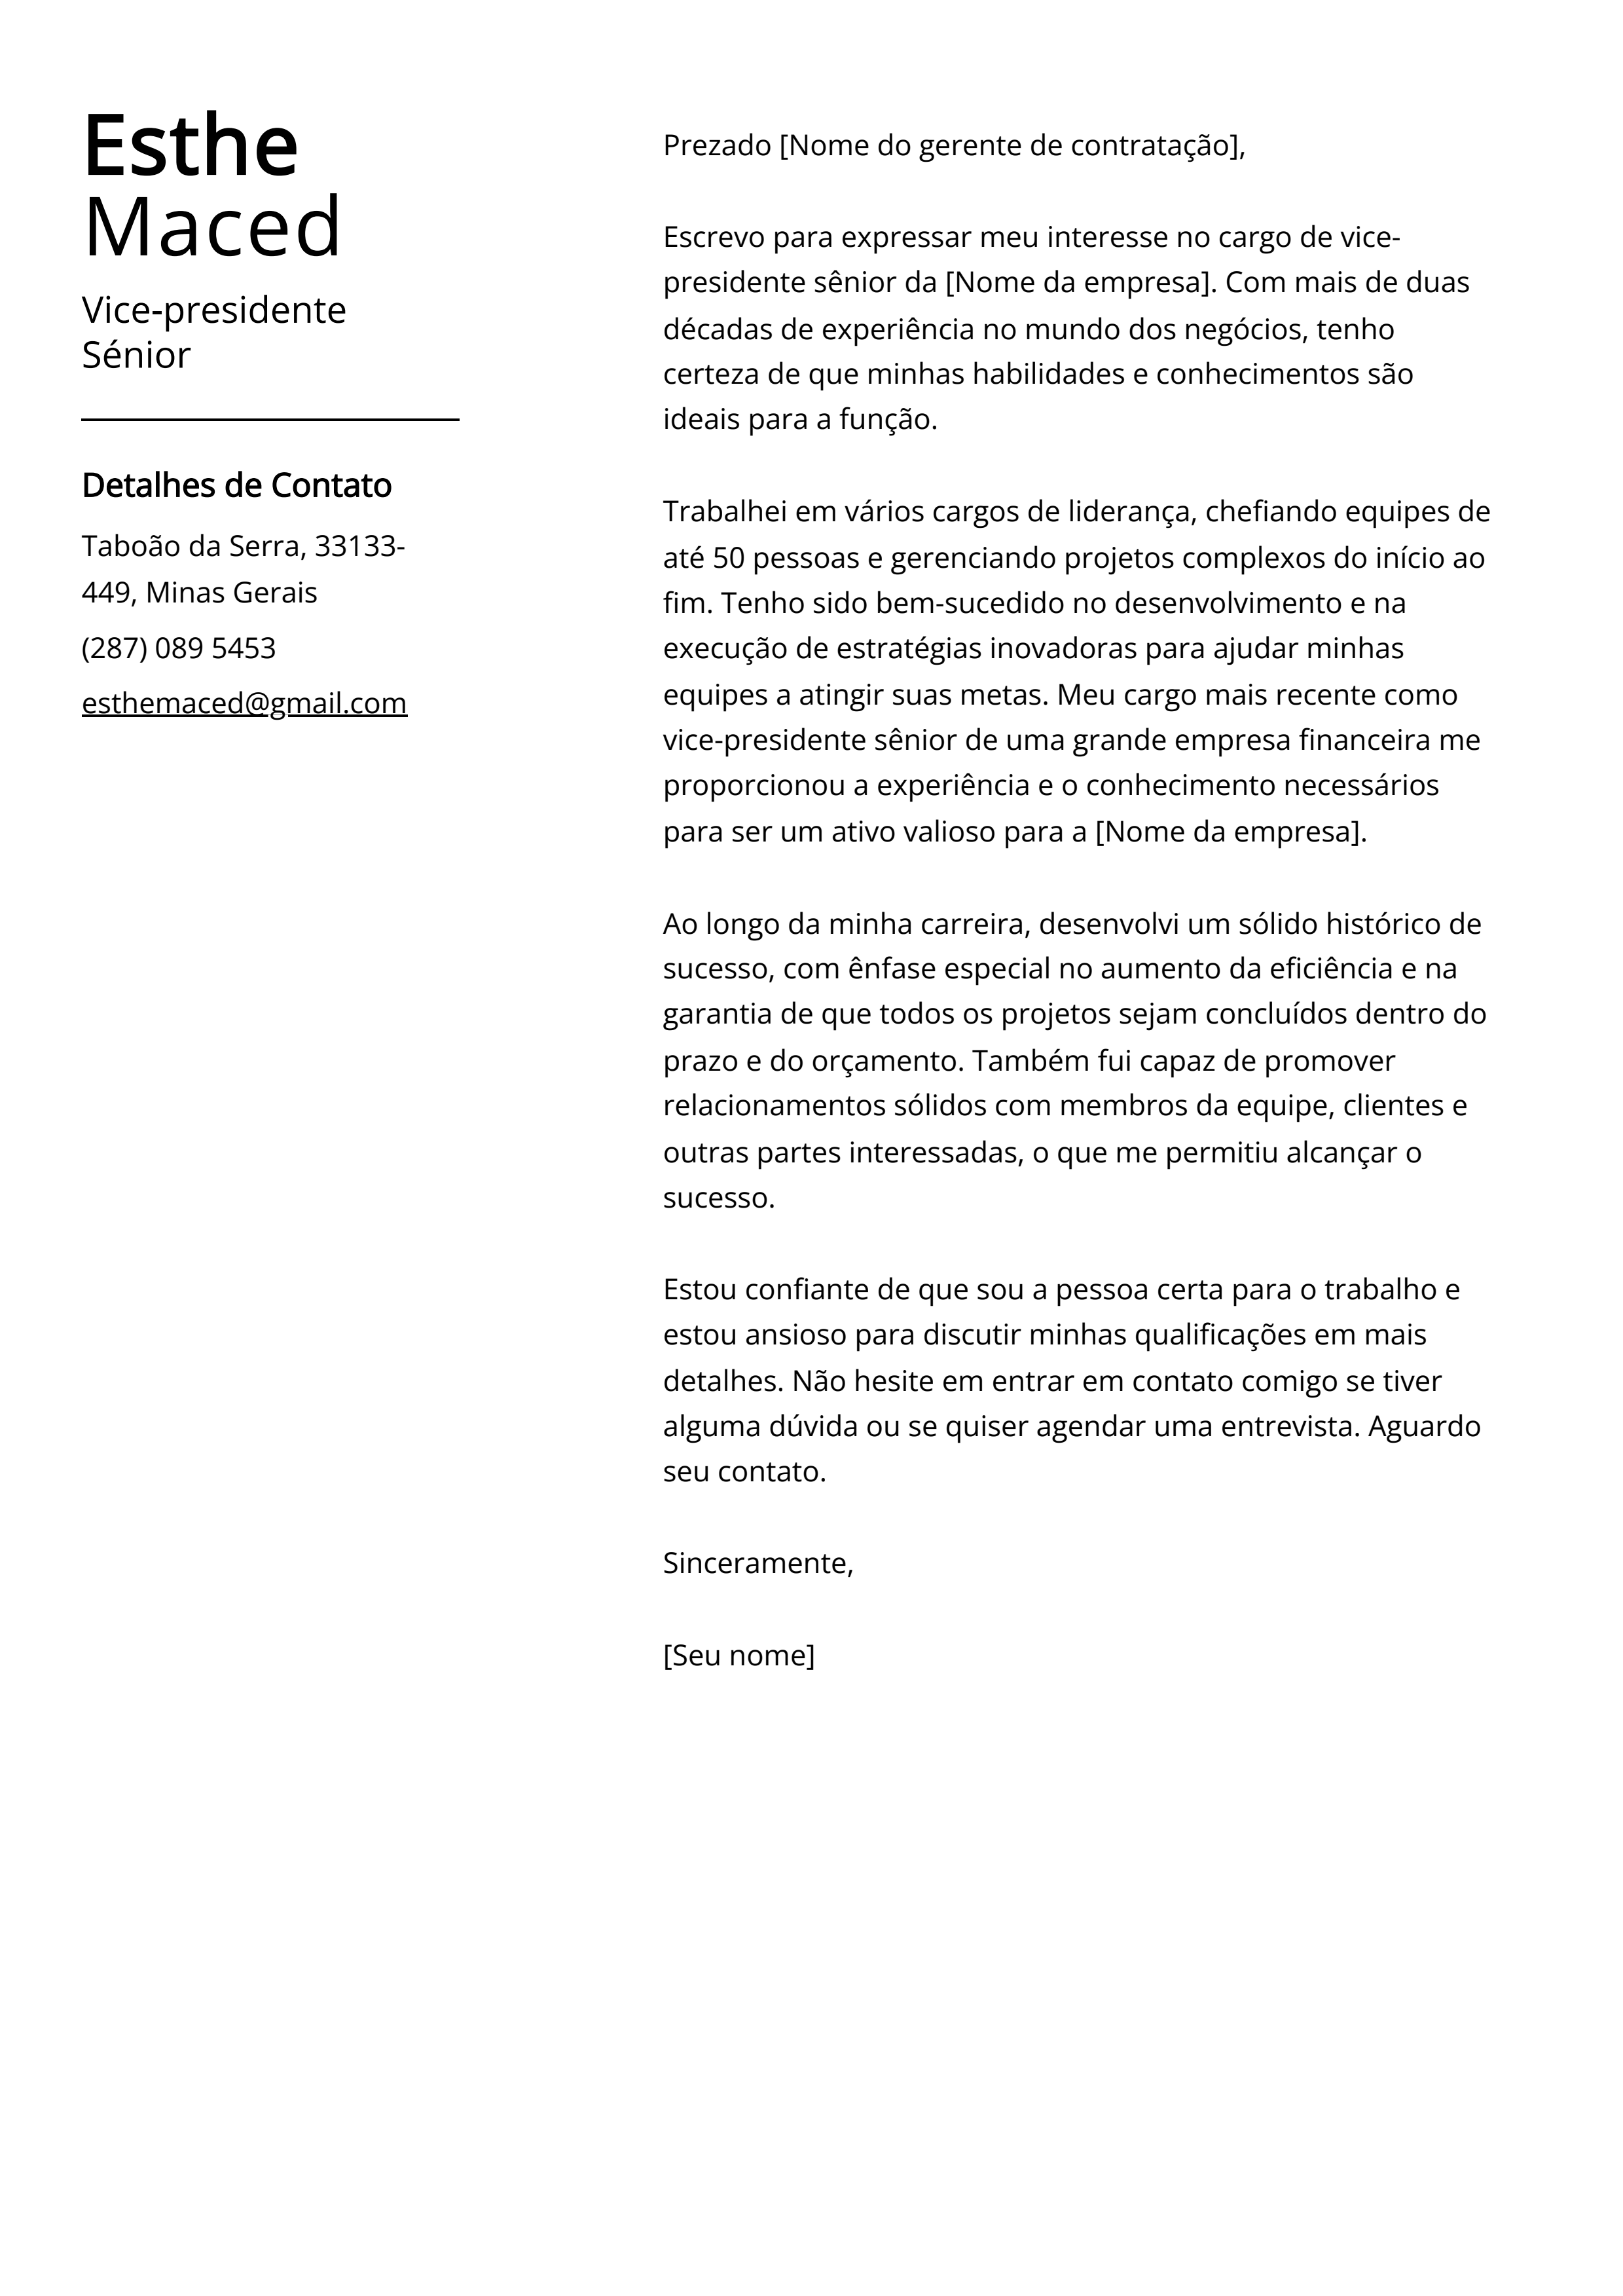 Exemplo de carta de apresentação do Vice-presidente Sênior